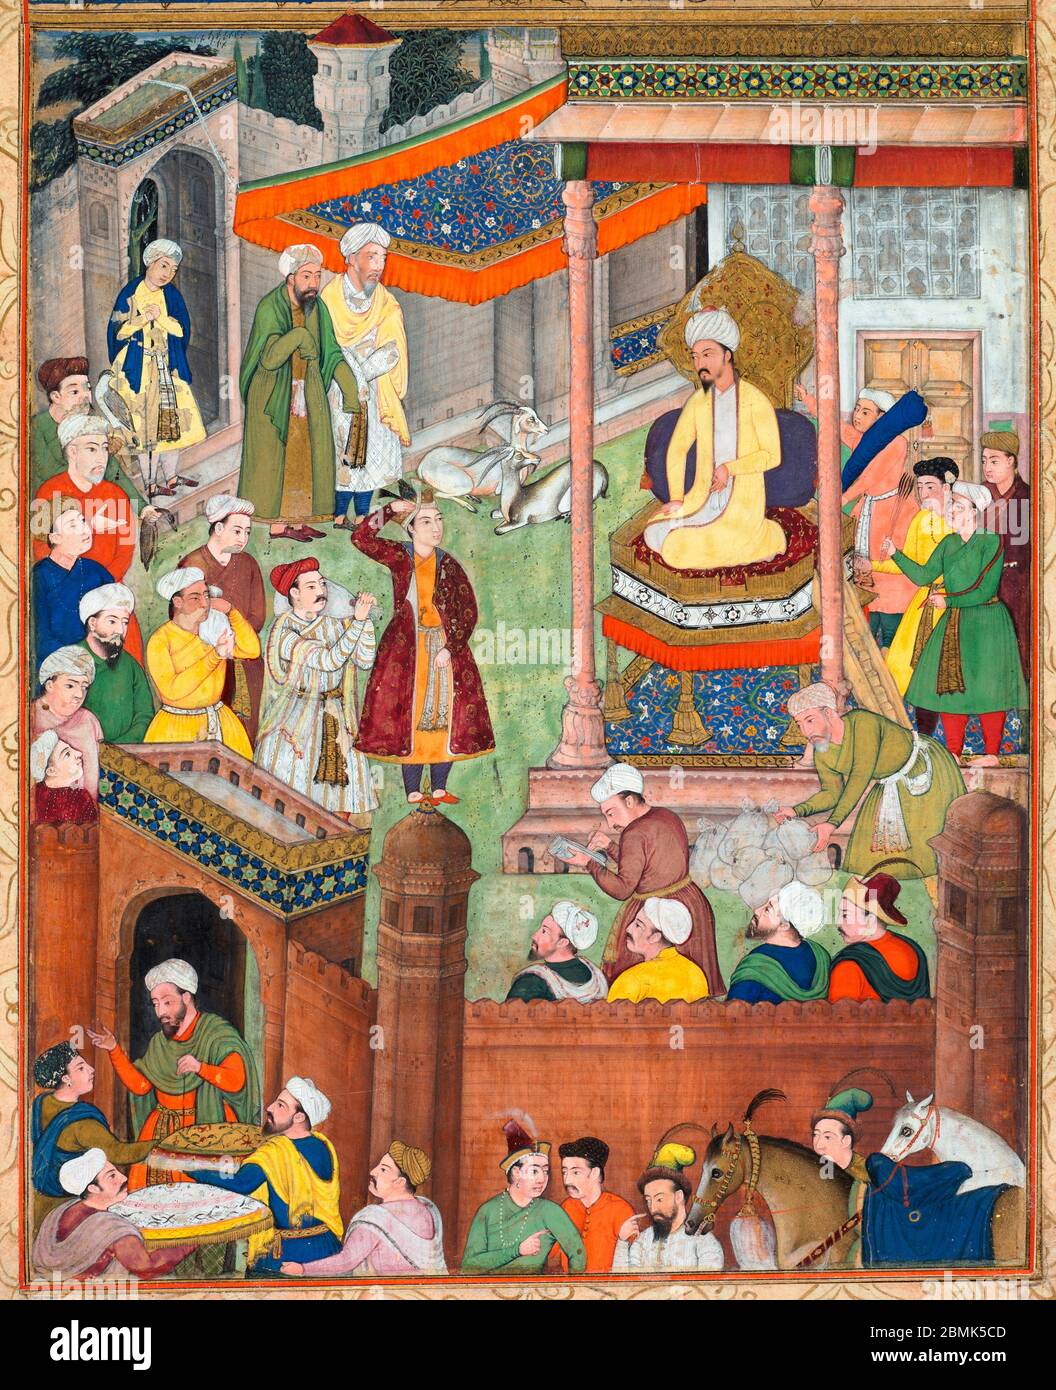 Babur riceve il bottino di Akbar e il saluto di Humayun dopo la vittoria sul Sultano Ibrahim nel 1526, da un Akbar-nama (Libro di Akbar) di Abu’l Fazl, circa 1600 - Foto Stock